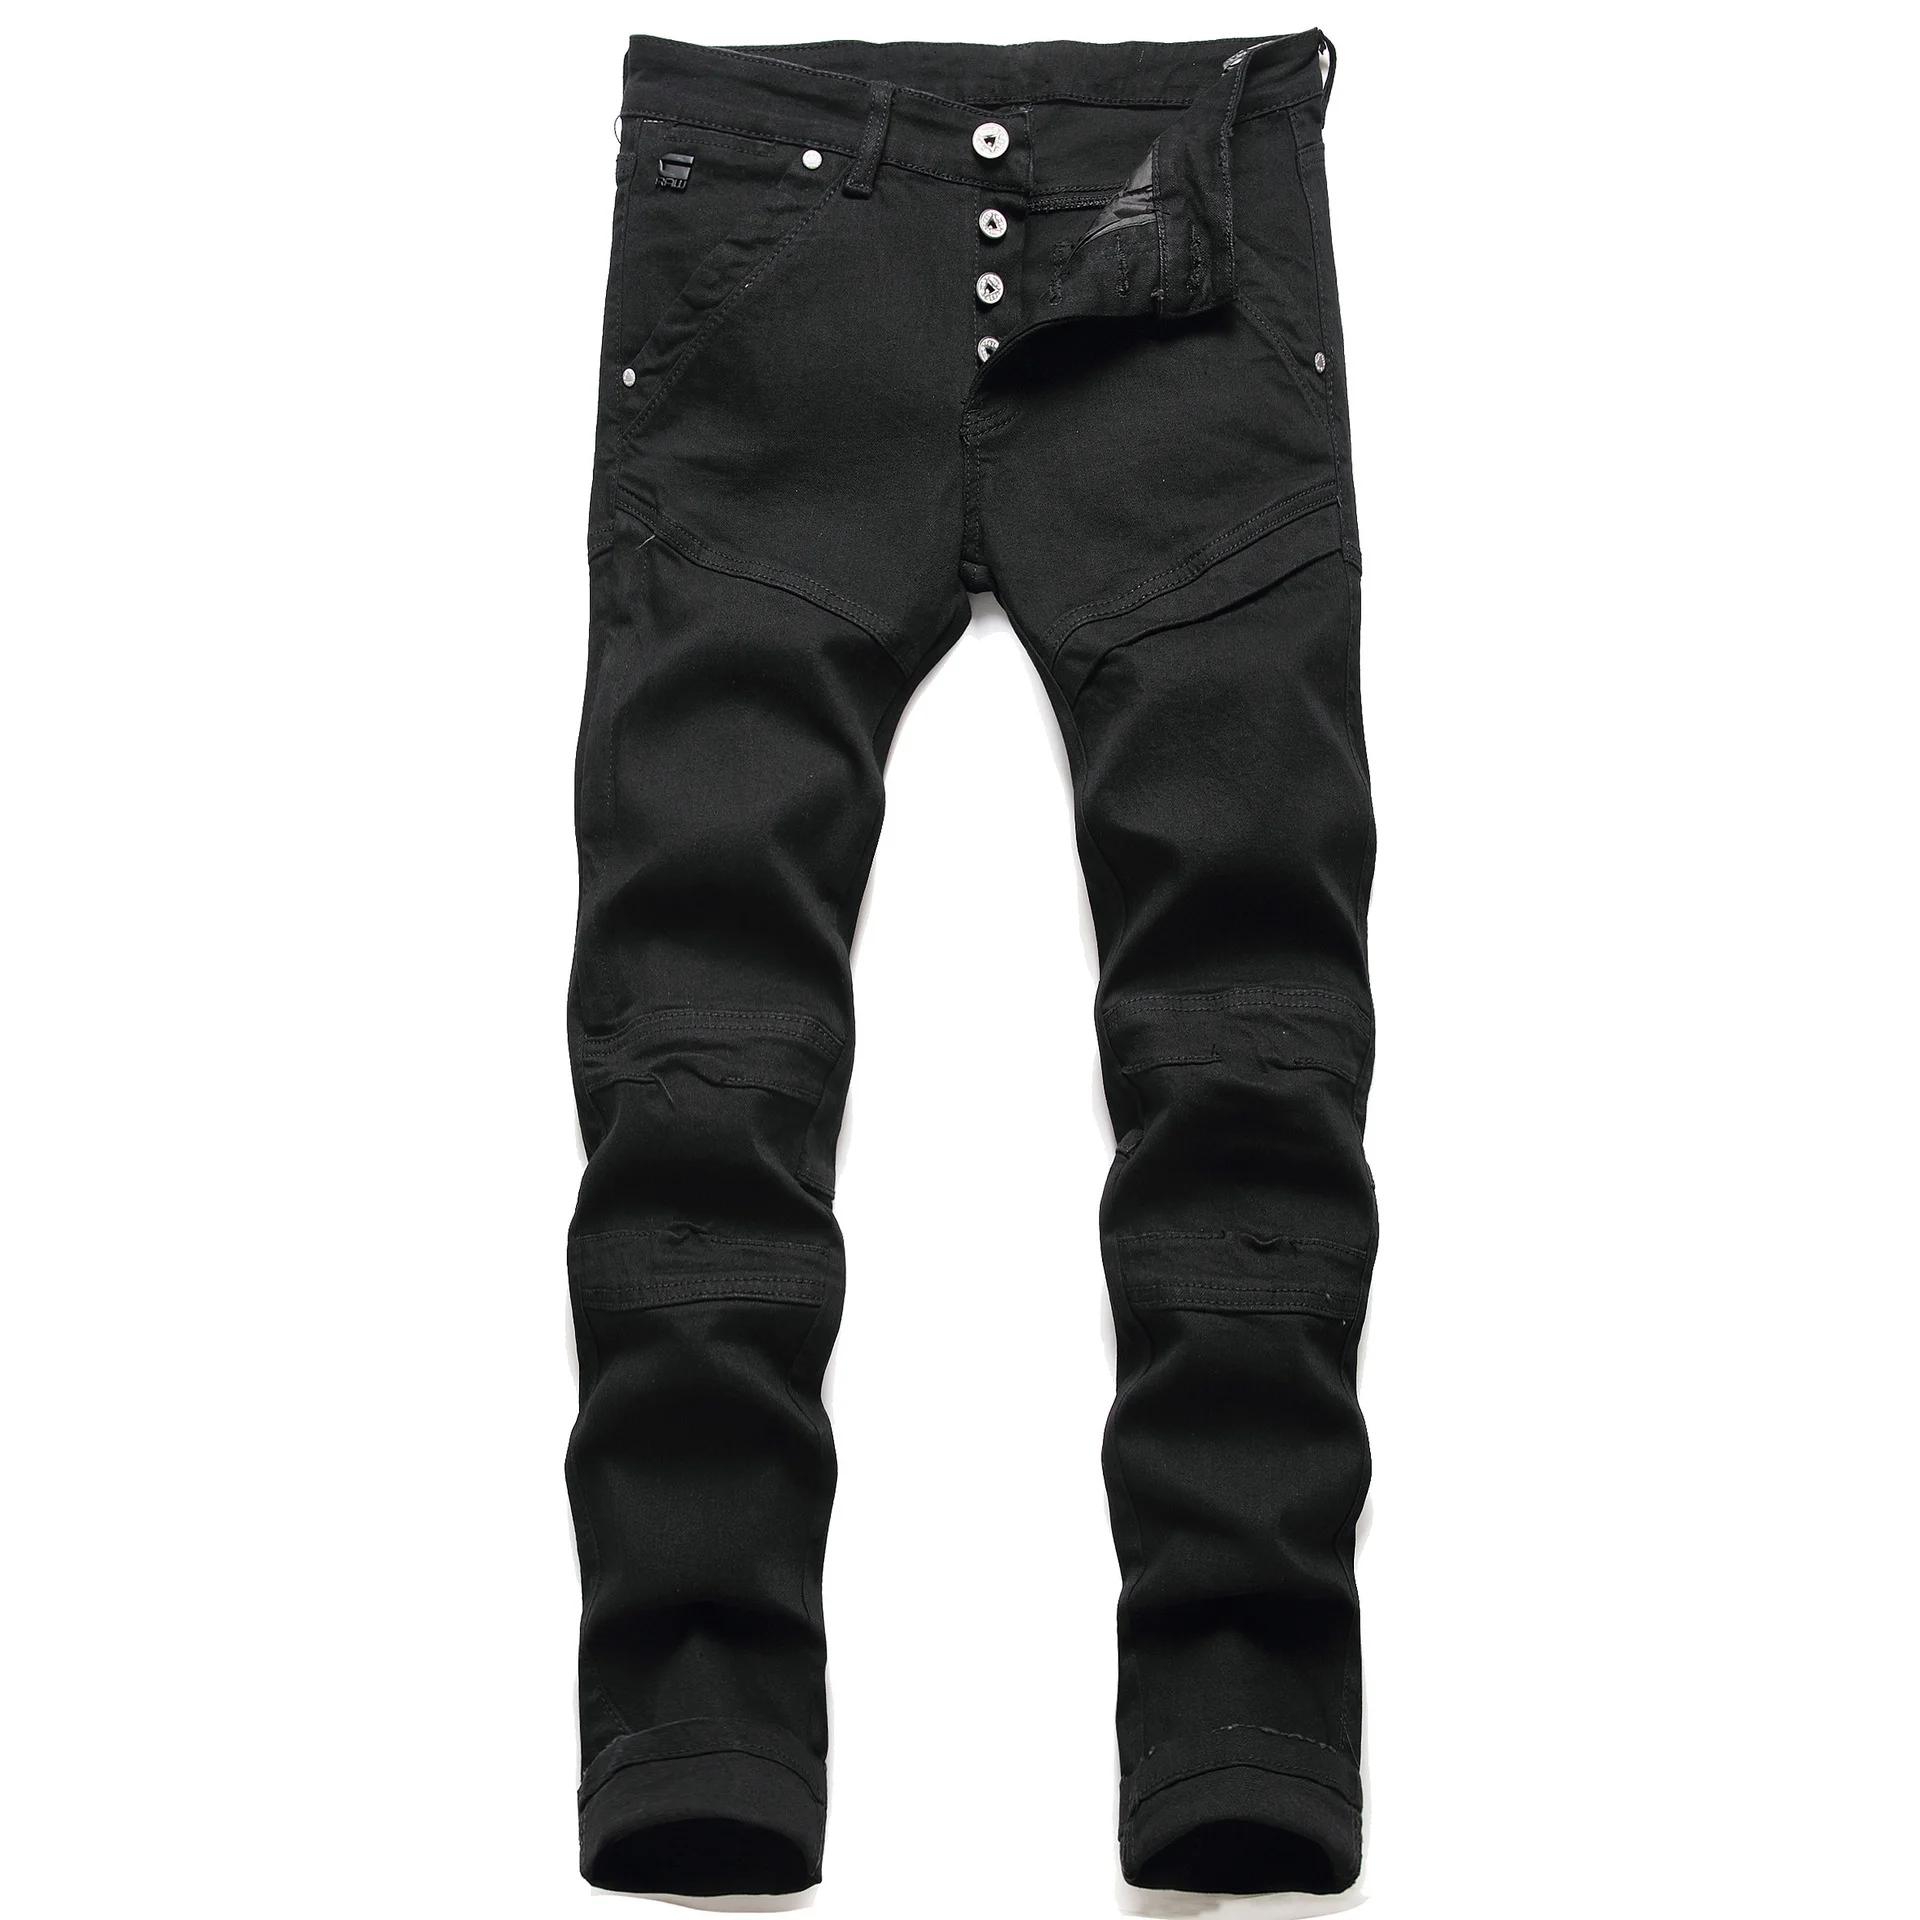 

Джинсы Fengshui мужские с прострочкой, стильные облегающие эластичные мотоциклетные джинсы с дырками, черные, весна-осень 3059